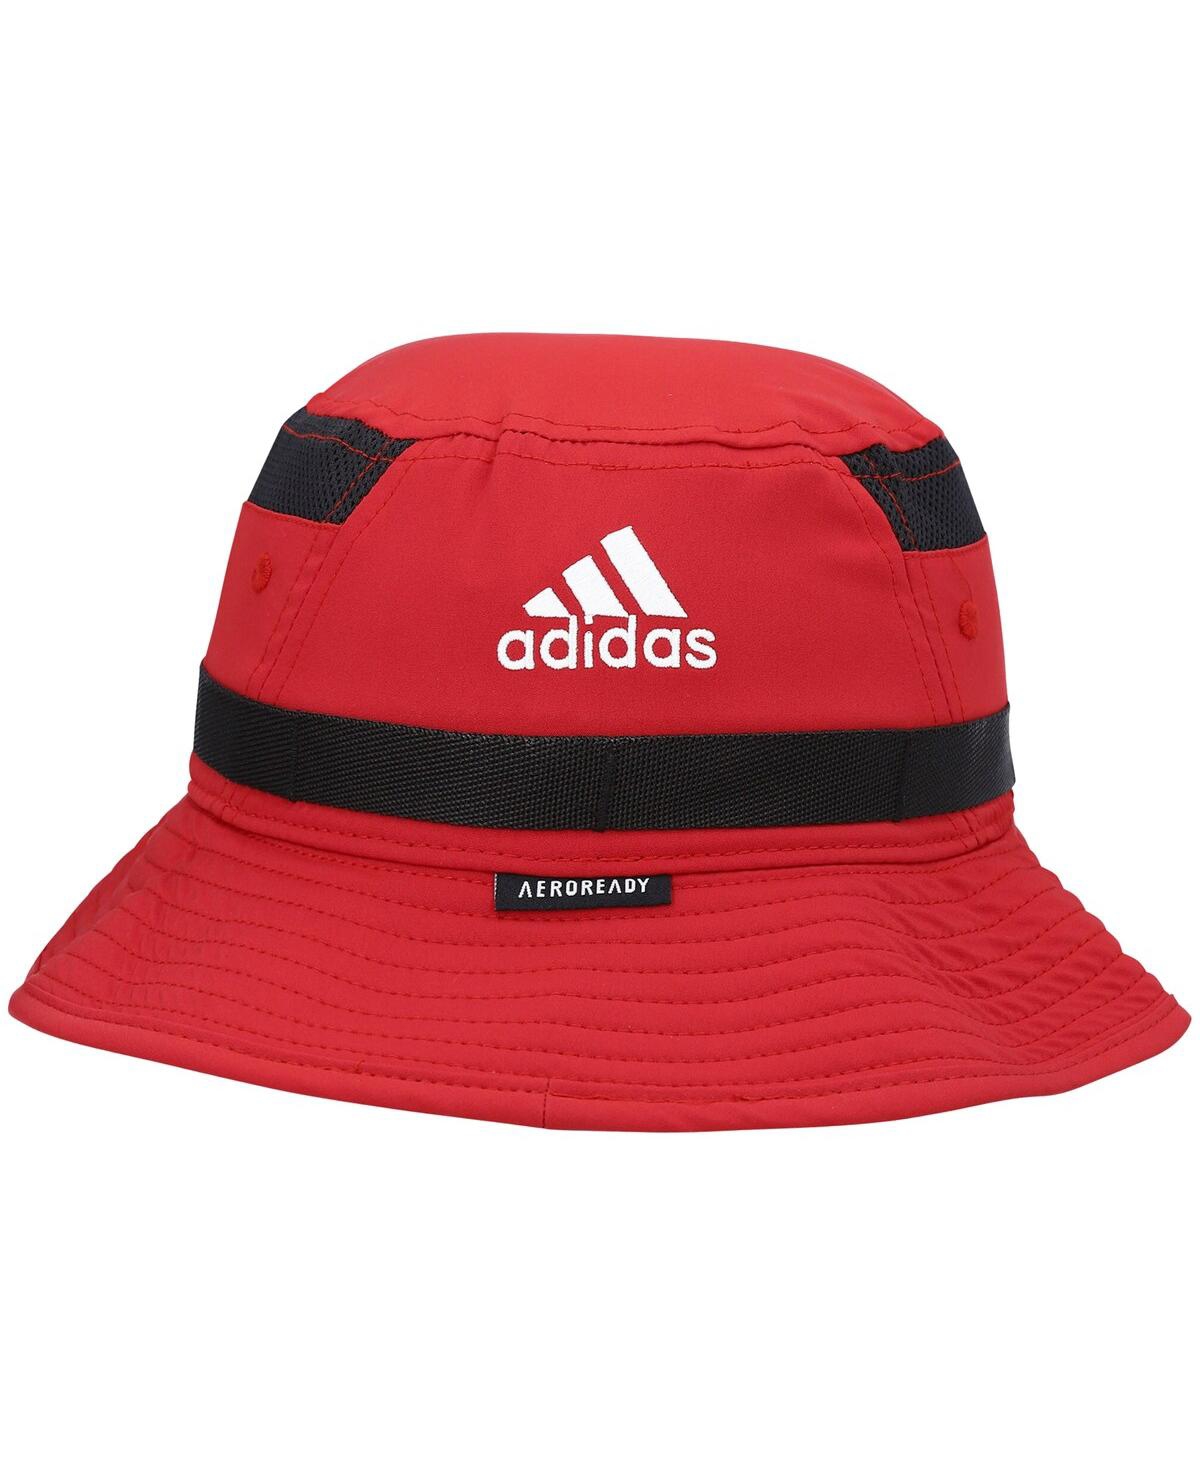 Shop Adidas Originals Men's Adidas Crimson Indiana Hoosiers 2021 Sideline Aeroready Bucket Hat